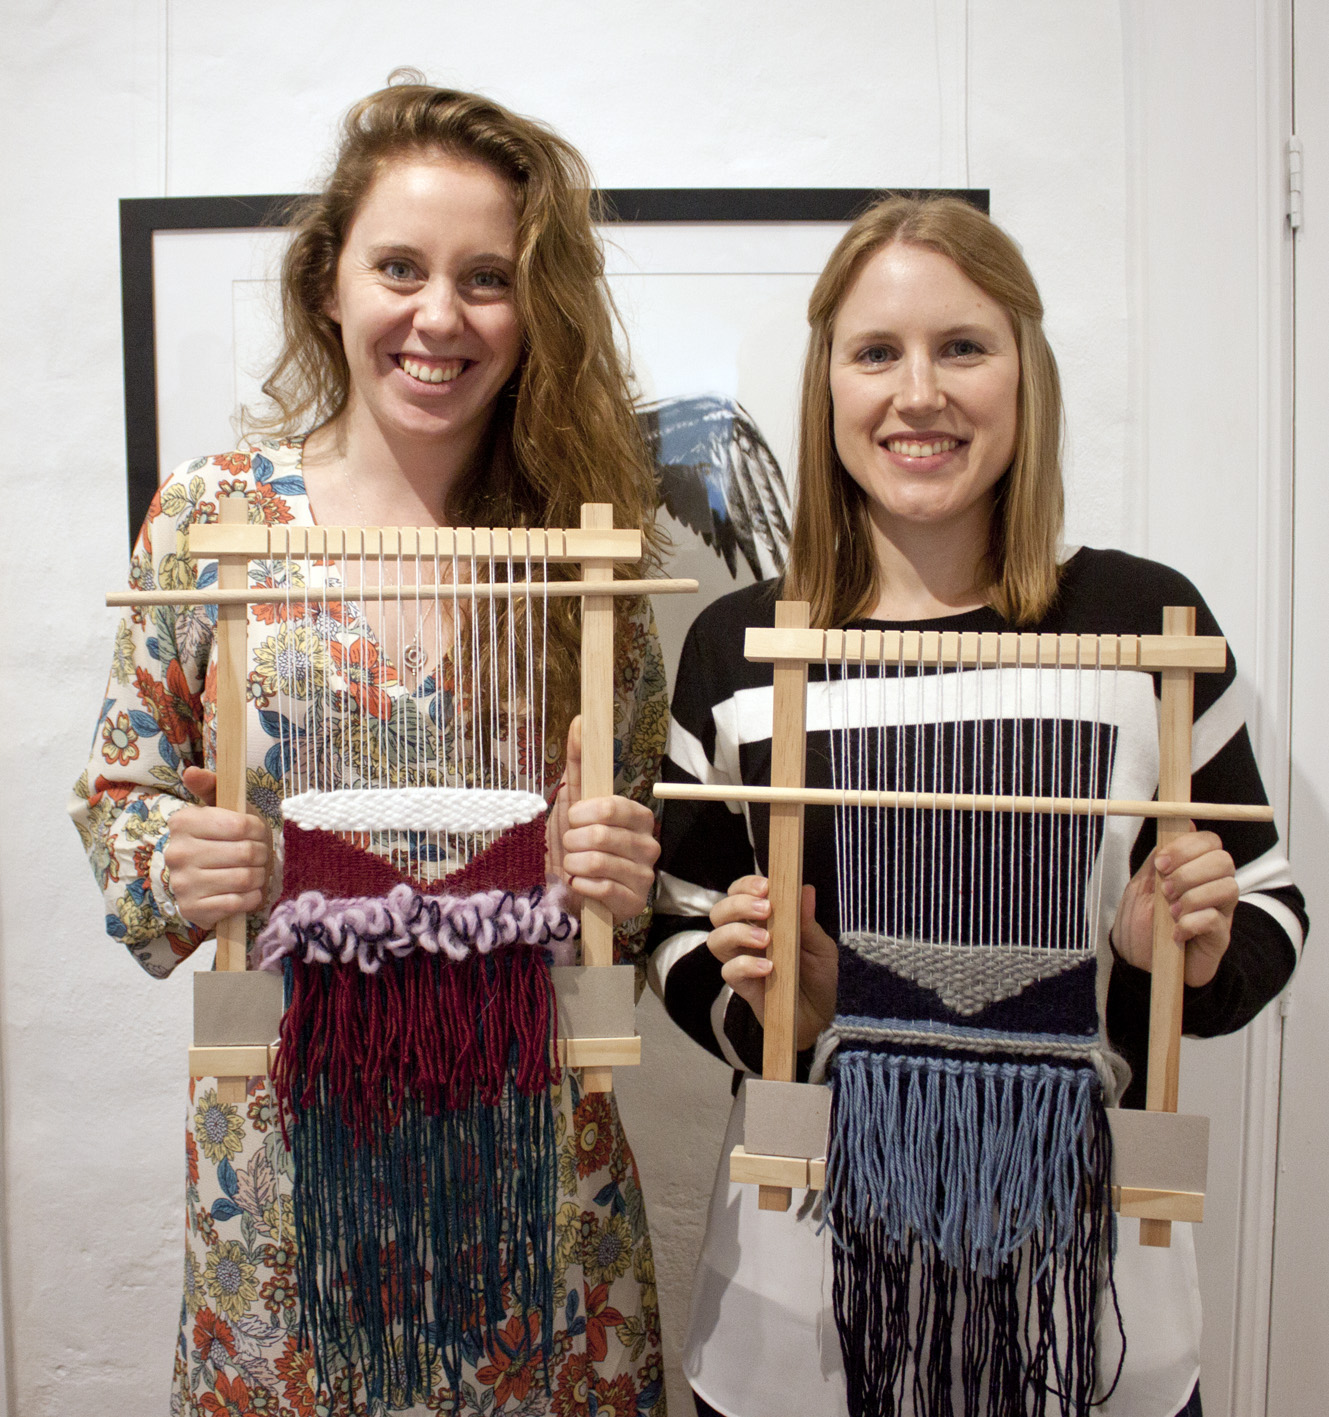 Loom Weaving Workshop — The Corner Store Gallery